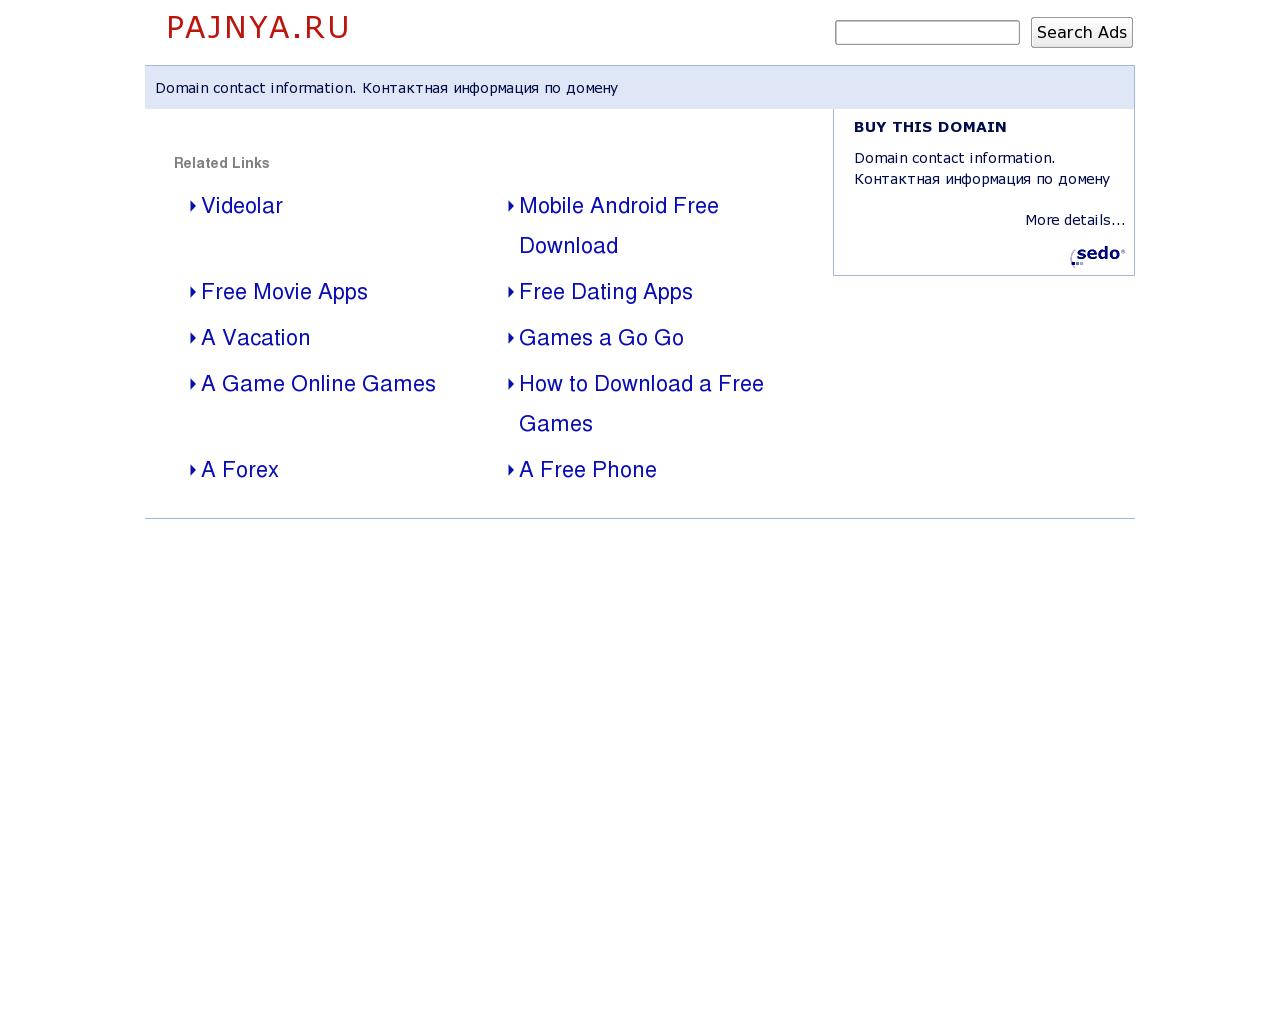 Изображение сайта pajnya.ru в разрешении 1280x1024